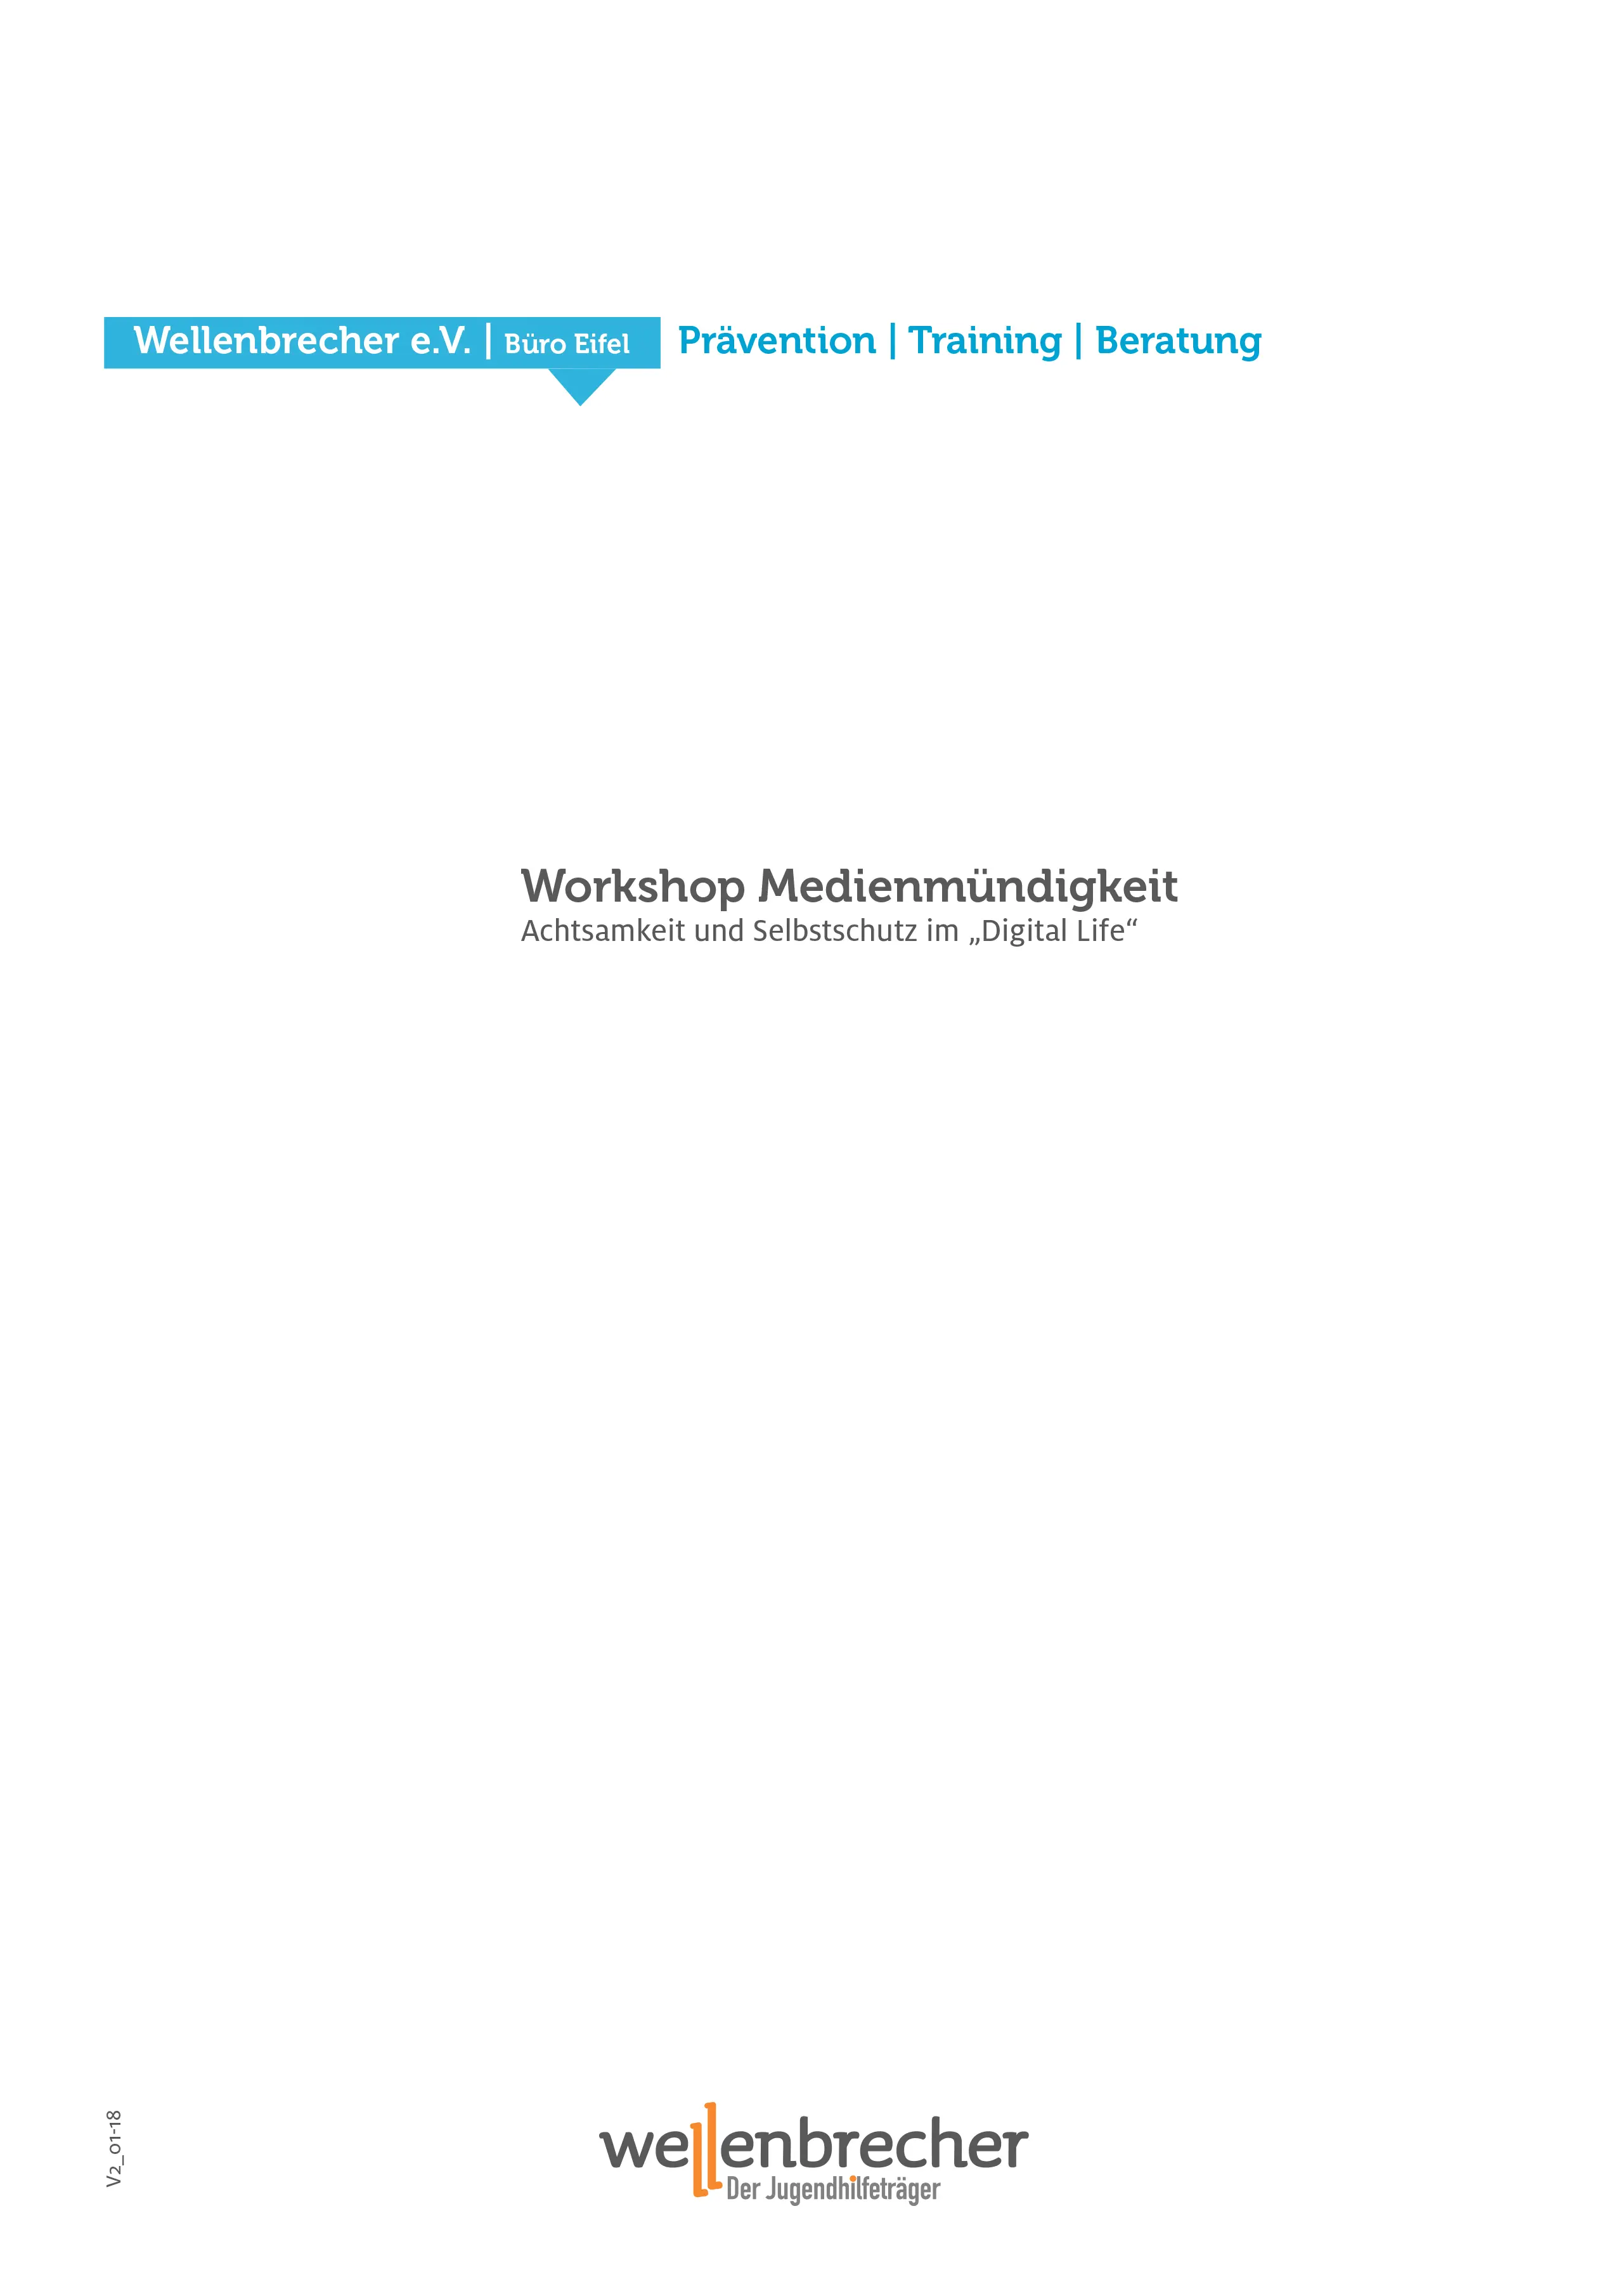  Titelseite Workshop Medienmündigkeit